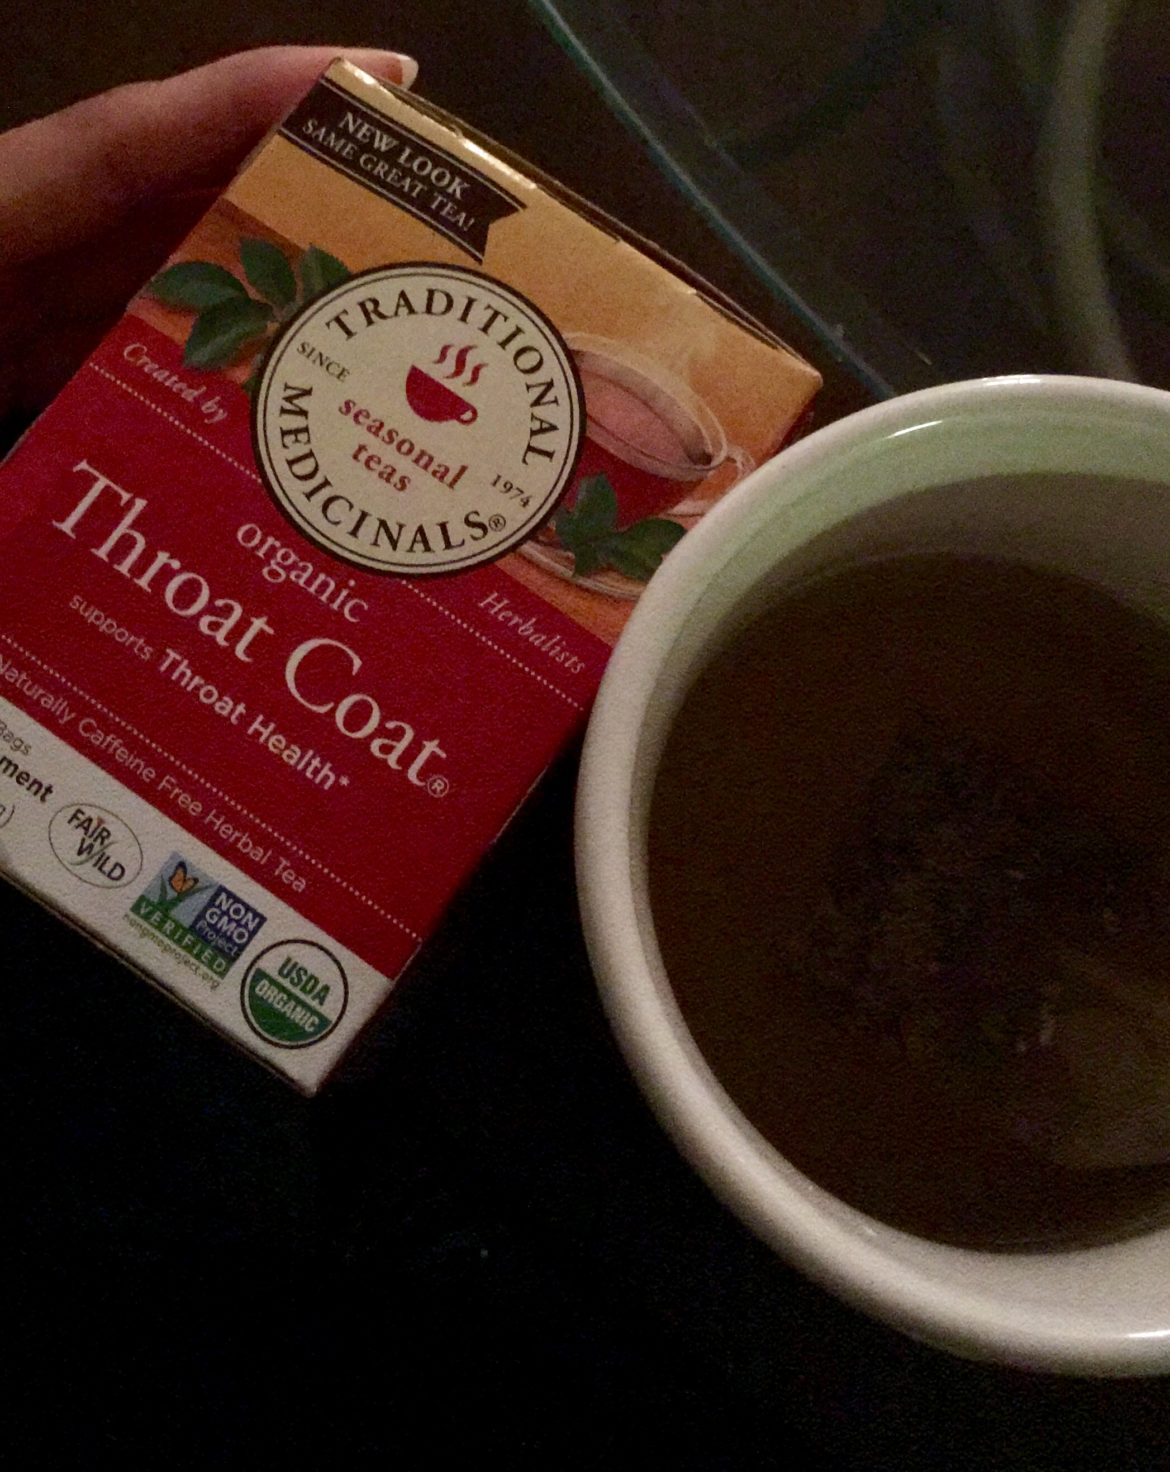 Throat coat tea